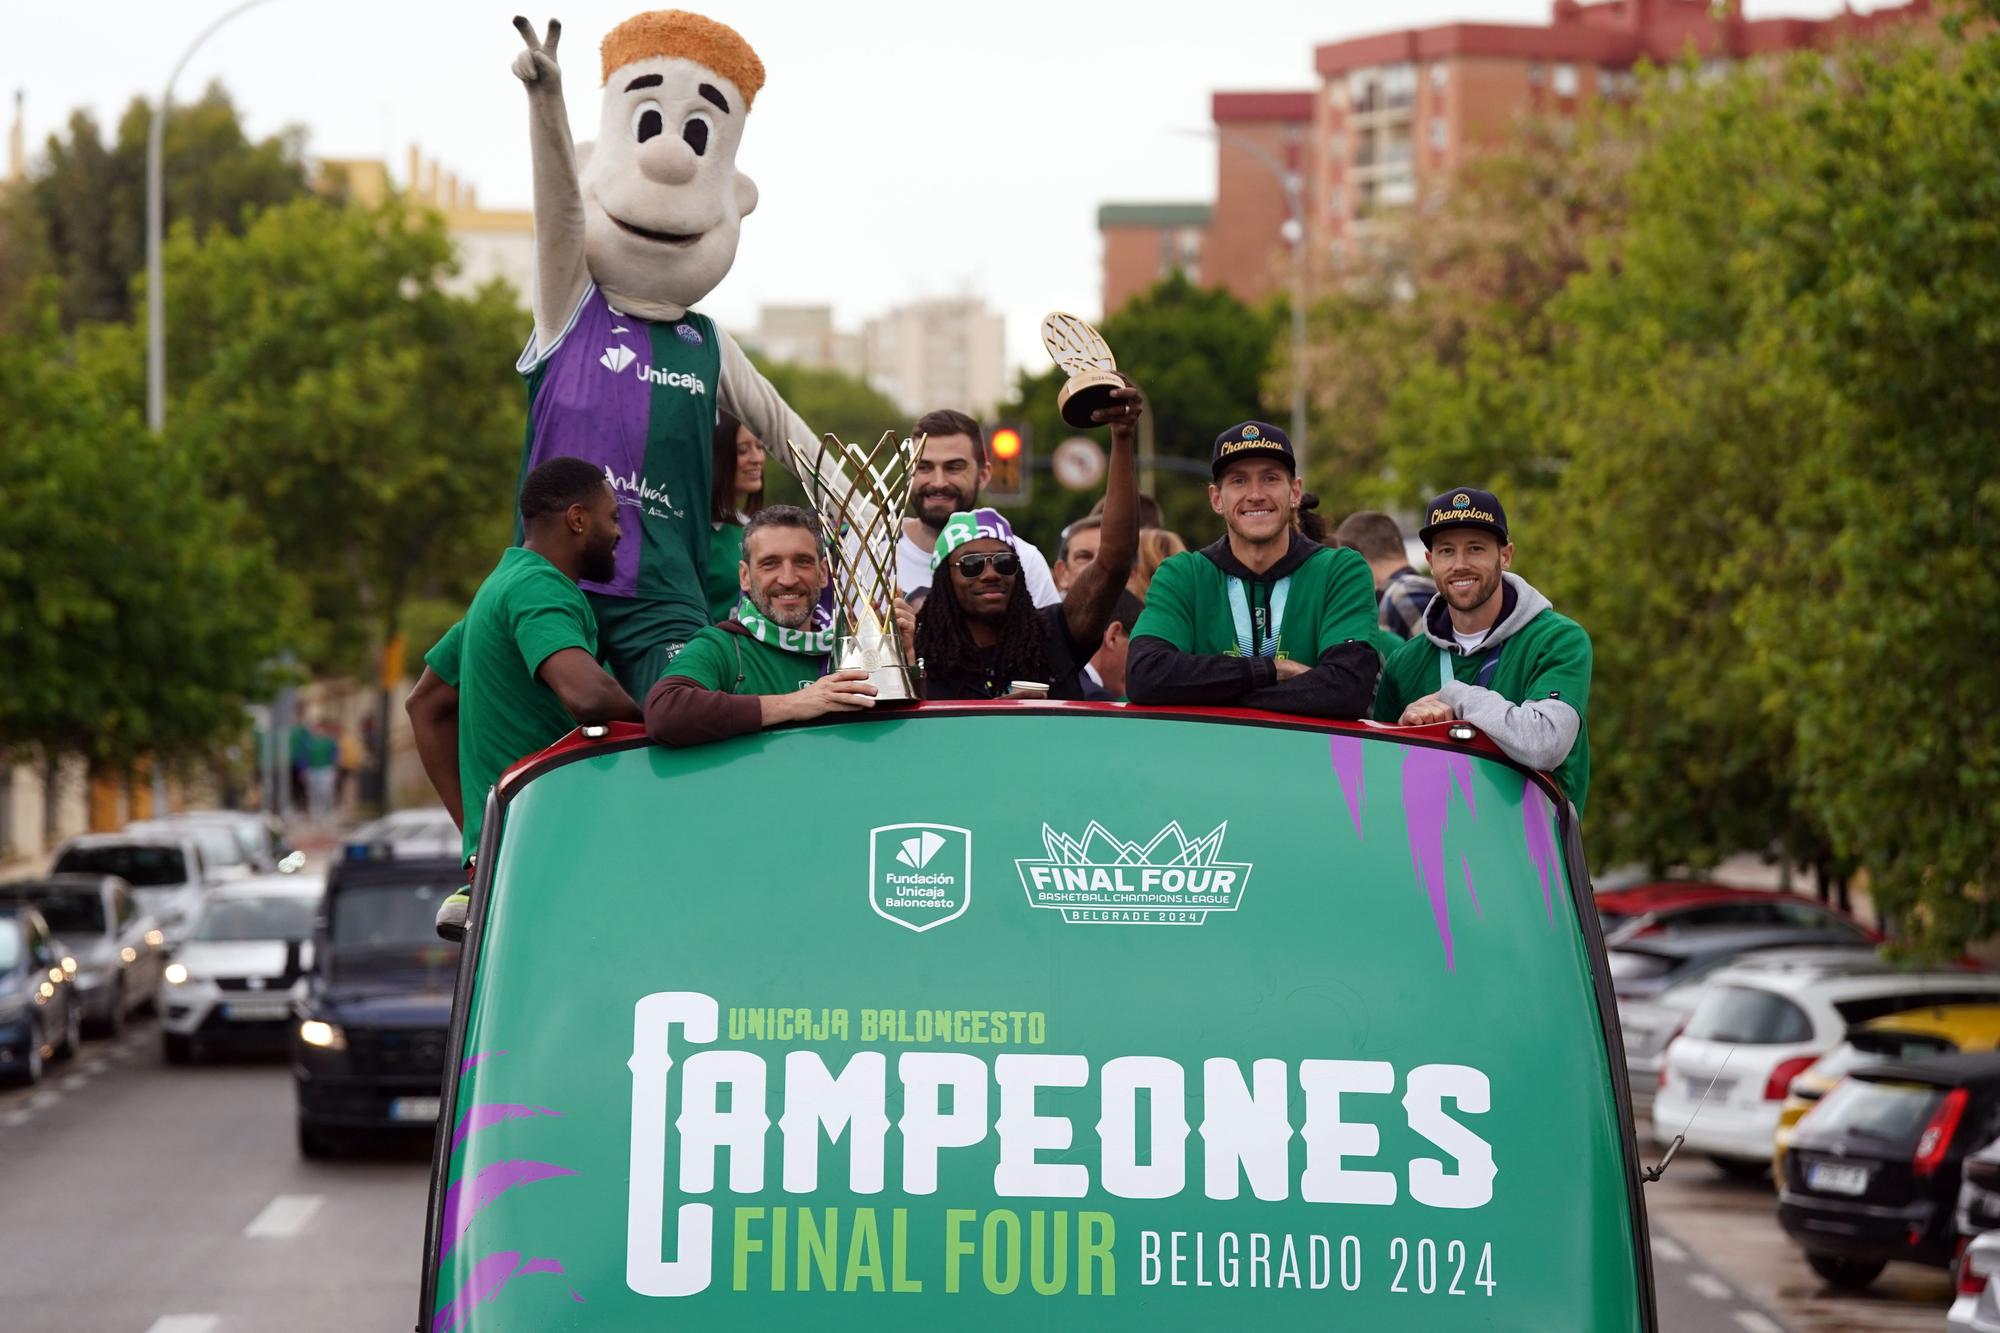 El Unicaja, campeón de la BCL, celebra el campeonato por las calles de la ciudad.
